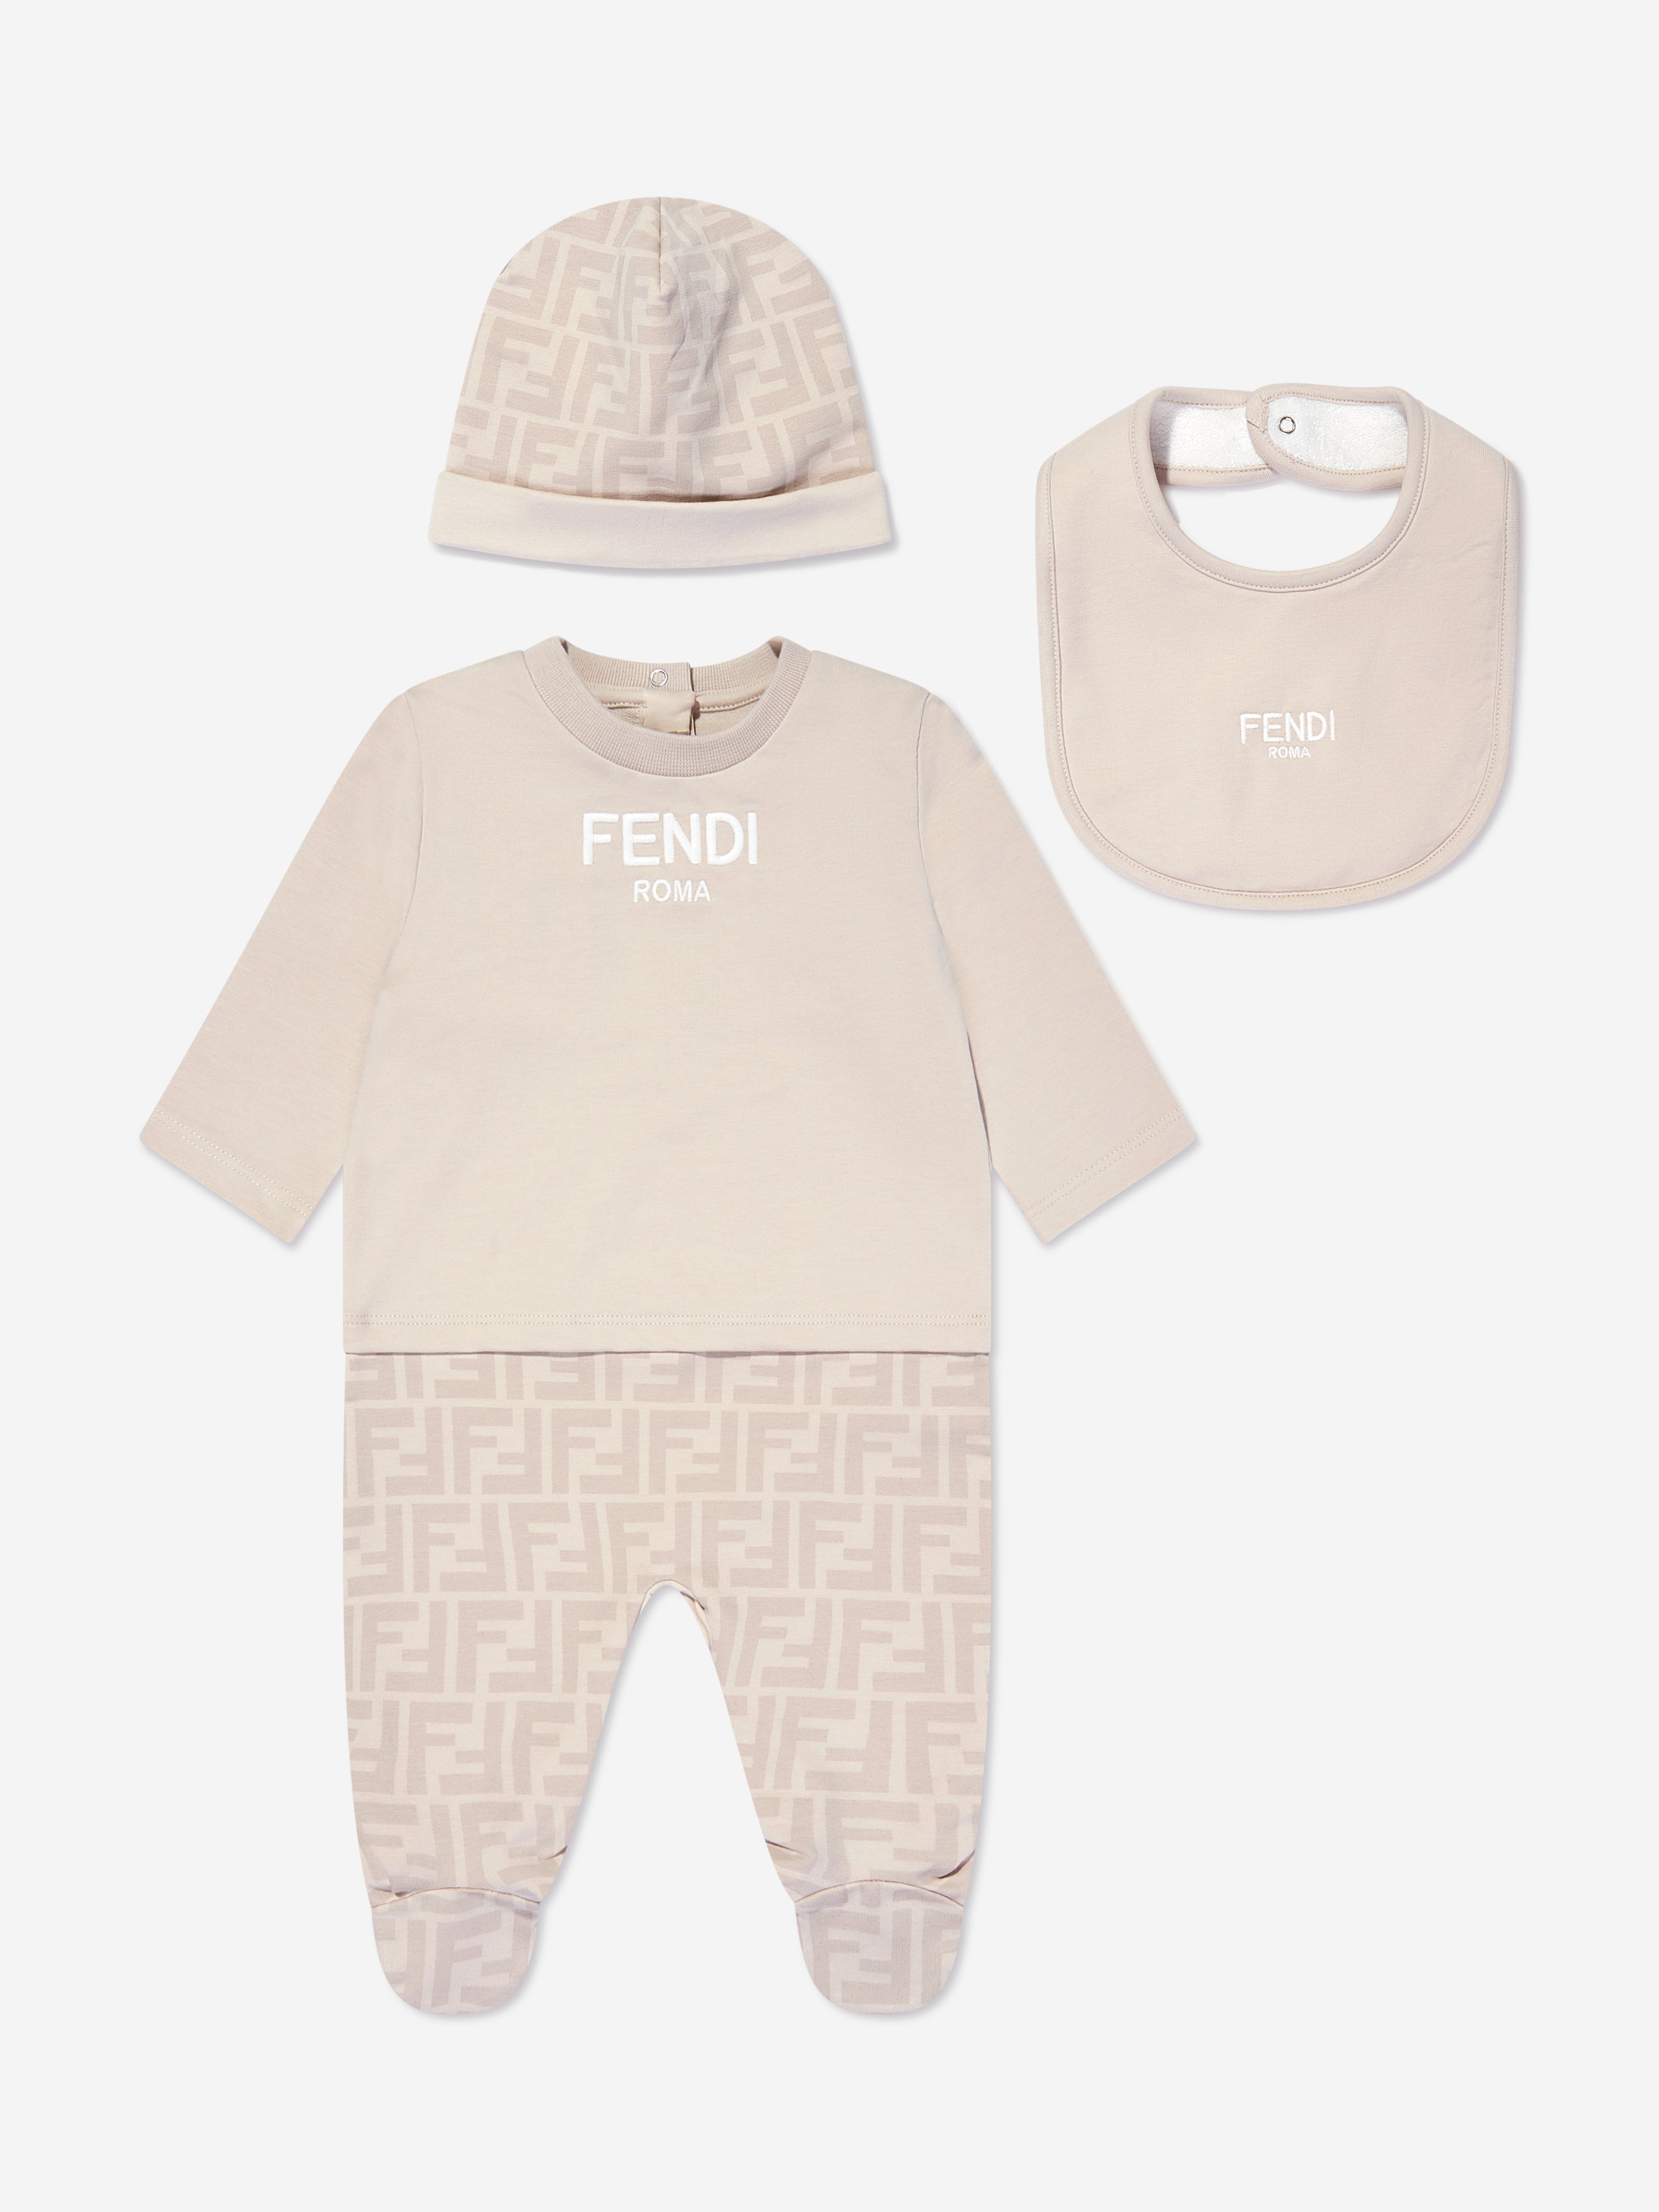 Fendi Baby 3 Piece Babygrow Gift Set In Neutral